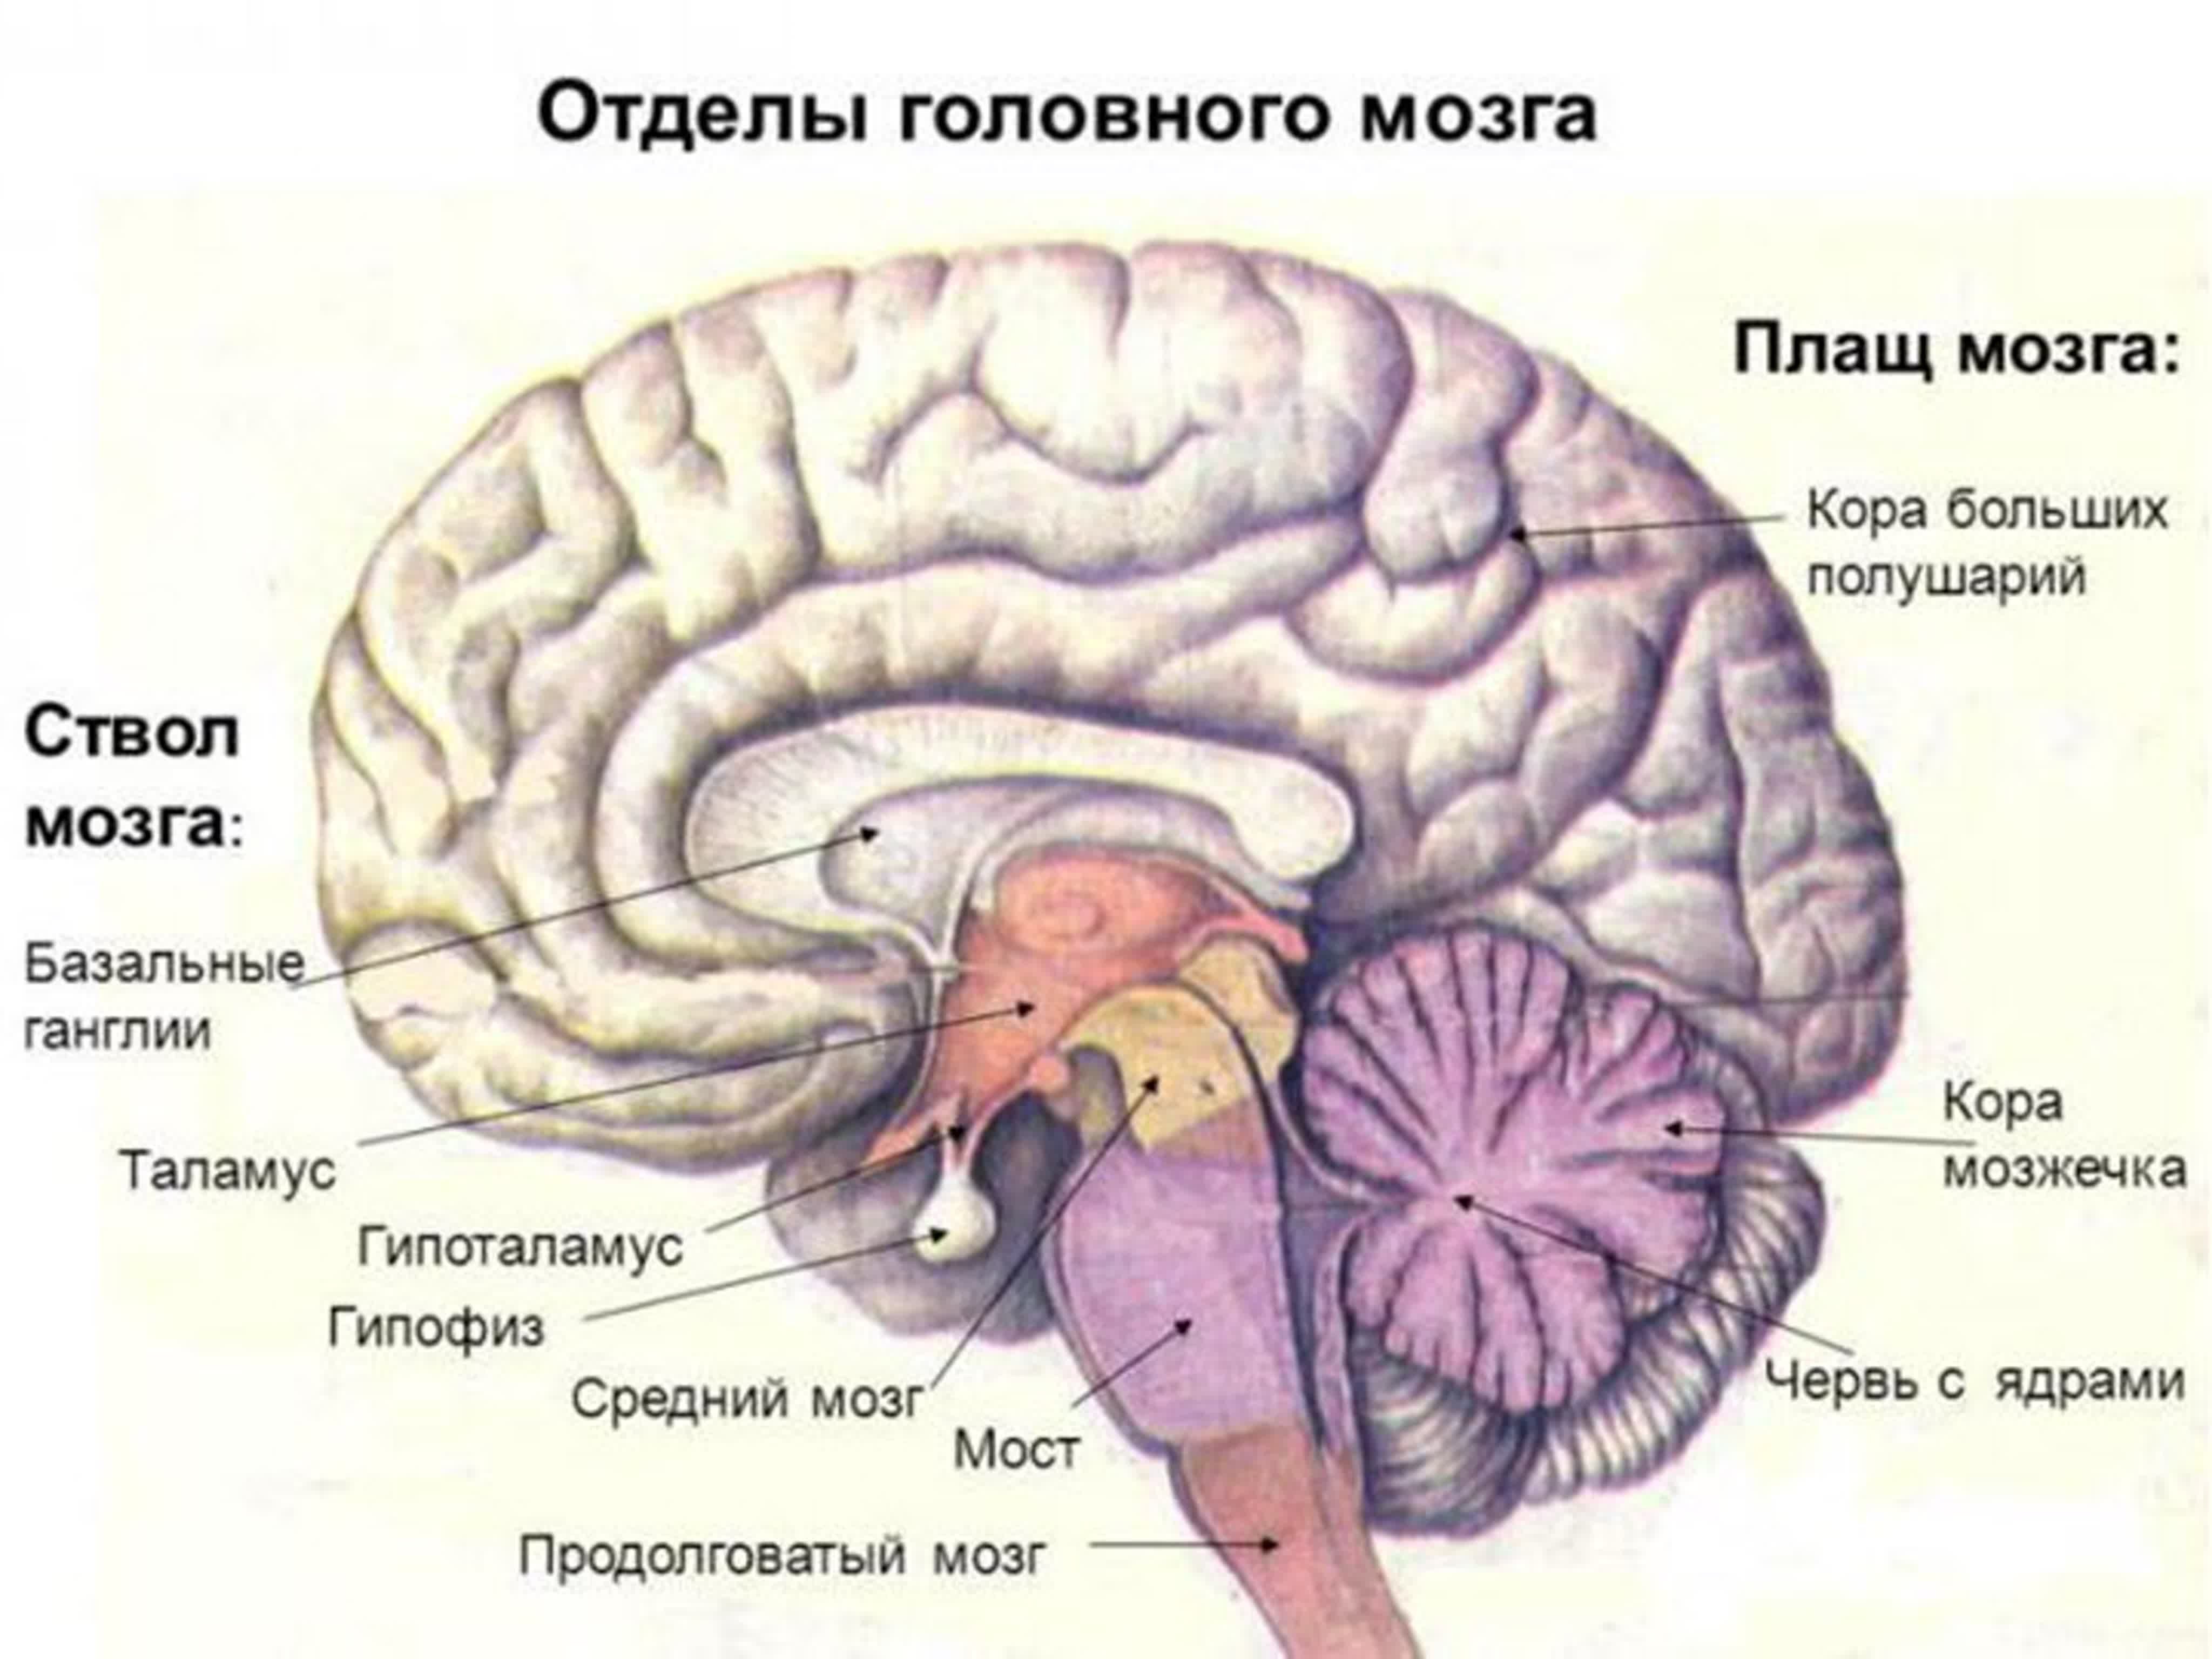 Размер переднего мозга. Функции отделов головного мозга рисунок. Функции отделов головного мозга анатомия. Отделы головного мозга и основные структуры отделов. Отделы головного мозга.строение больших полушарий.